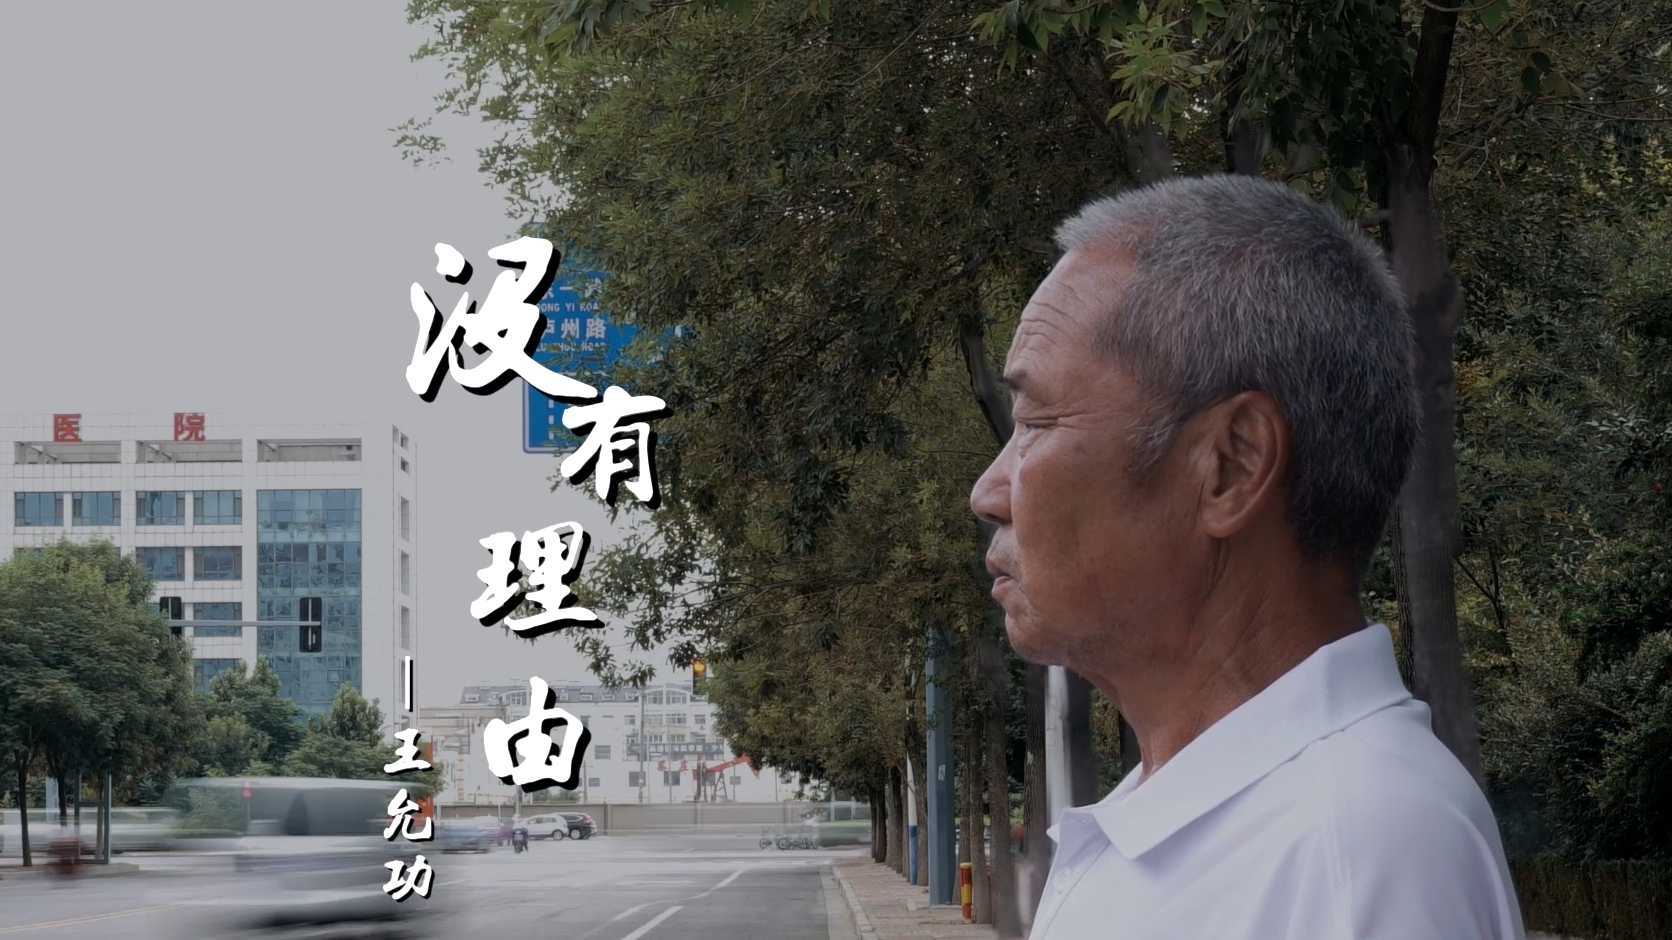 原创视频《没有理由》！来看东营经济技术开发区老党员的感人故事